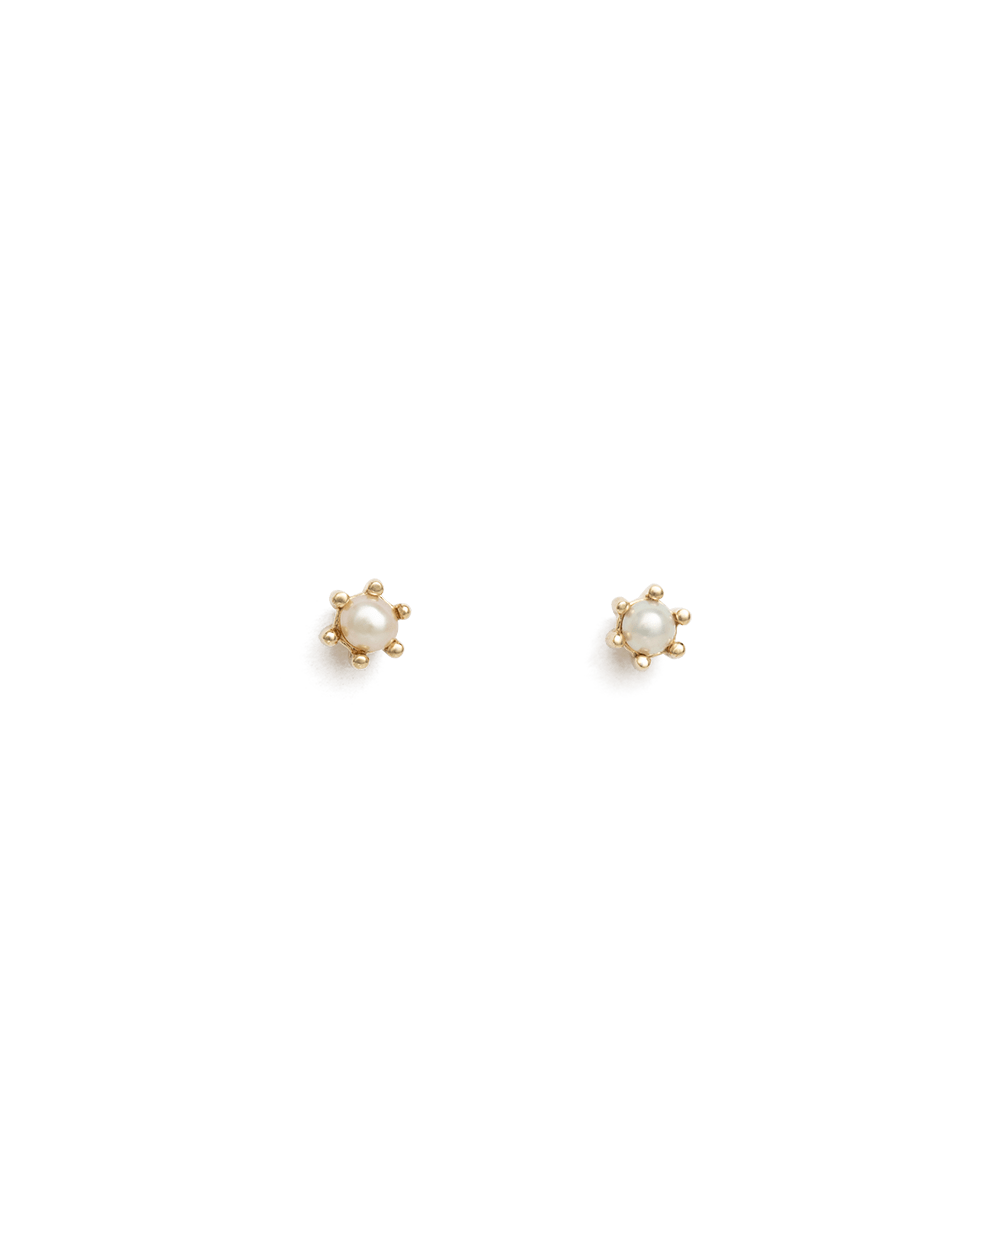 Kirstin Ash Earrings Solid Gold Kirstin Ash petite pearl studs earrings